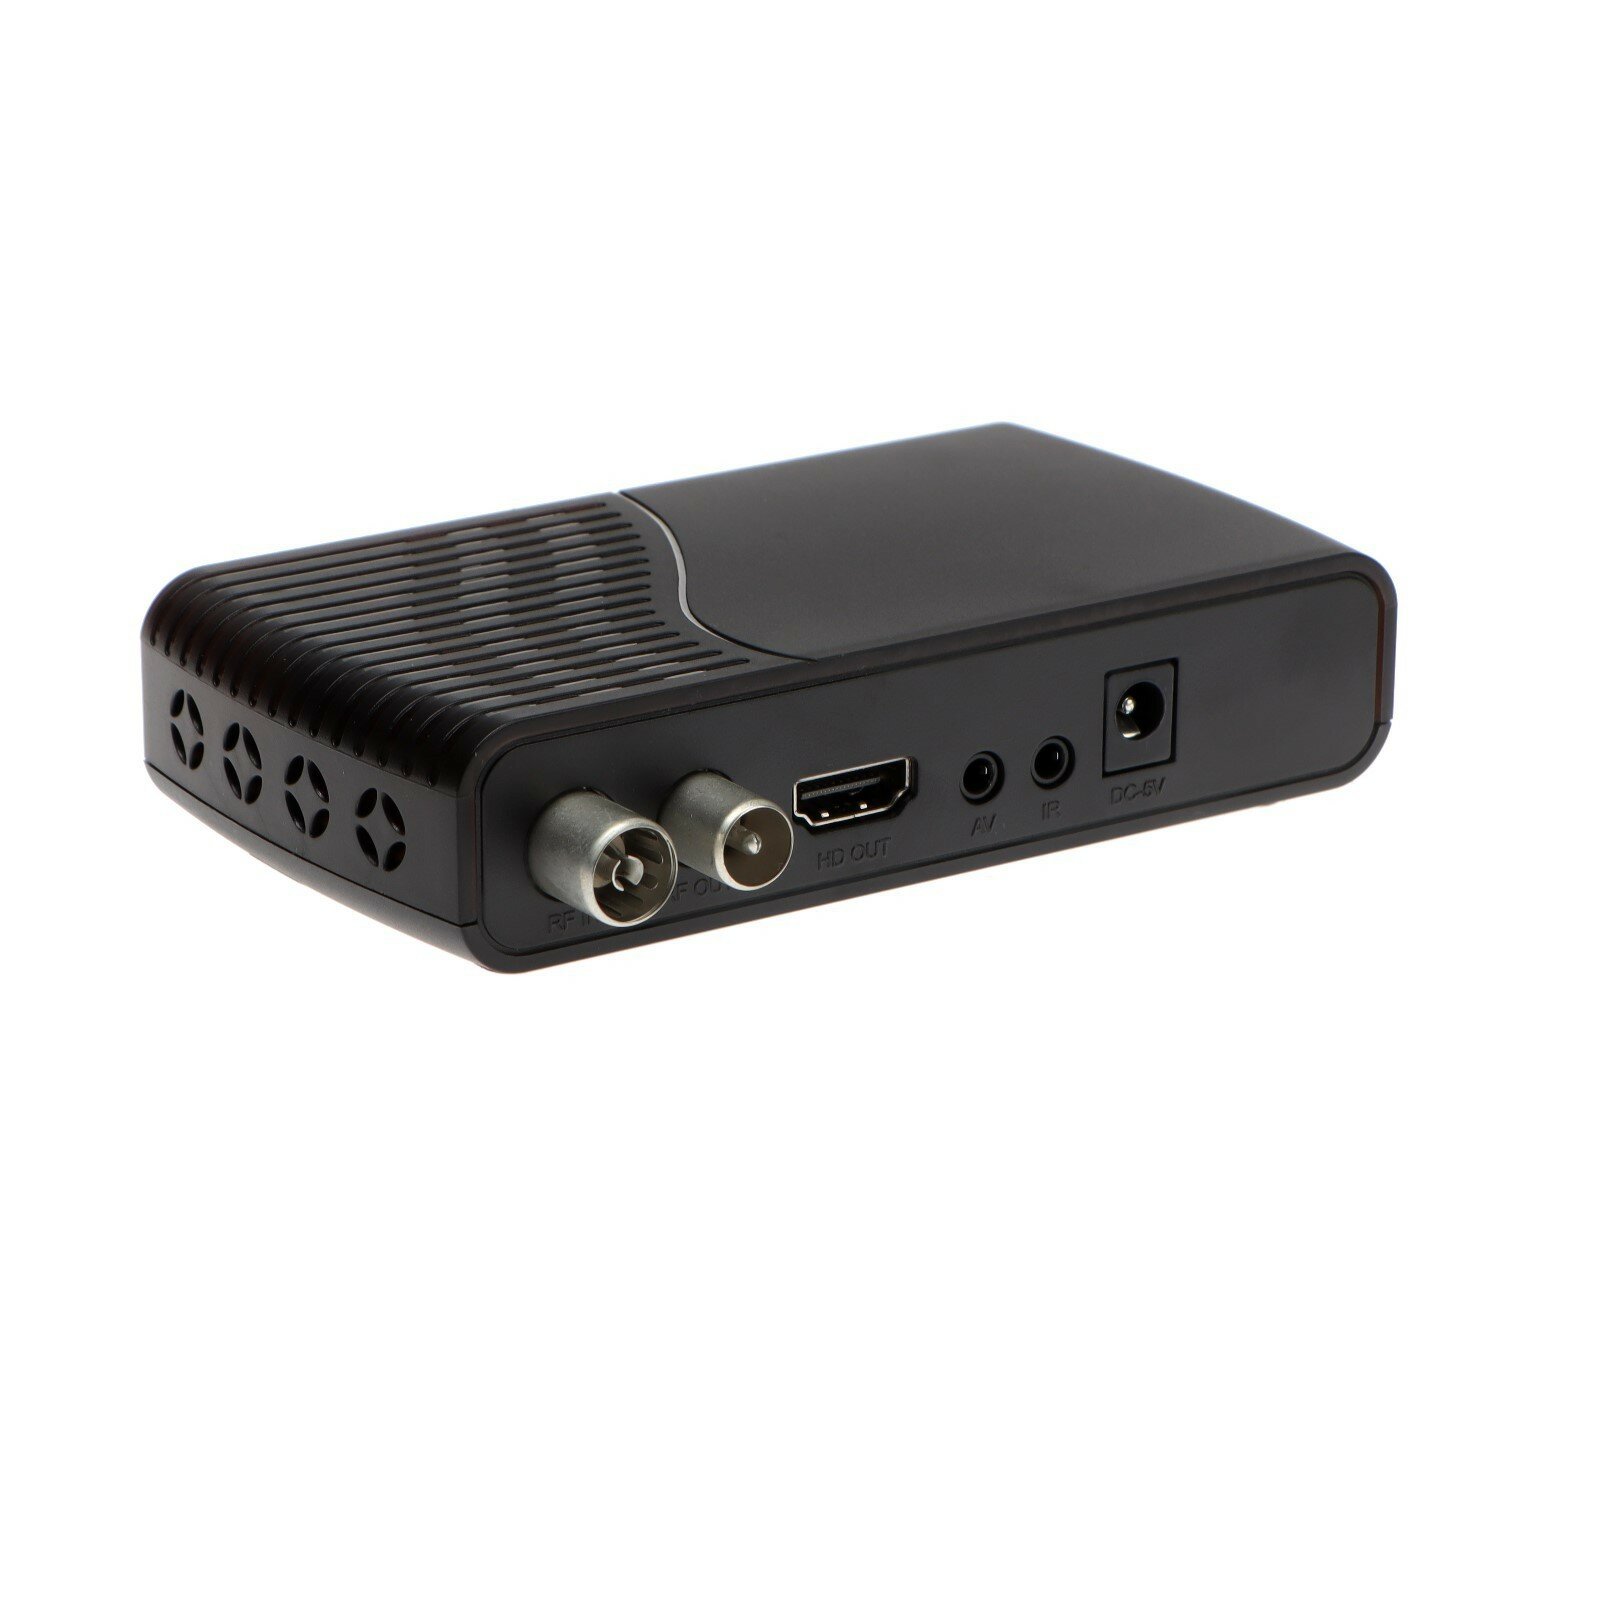 Приставка для цифрового ТВ TH-563 FullHD DVB-T2 HDMI USB чёрная